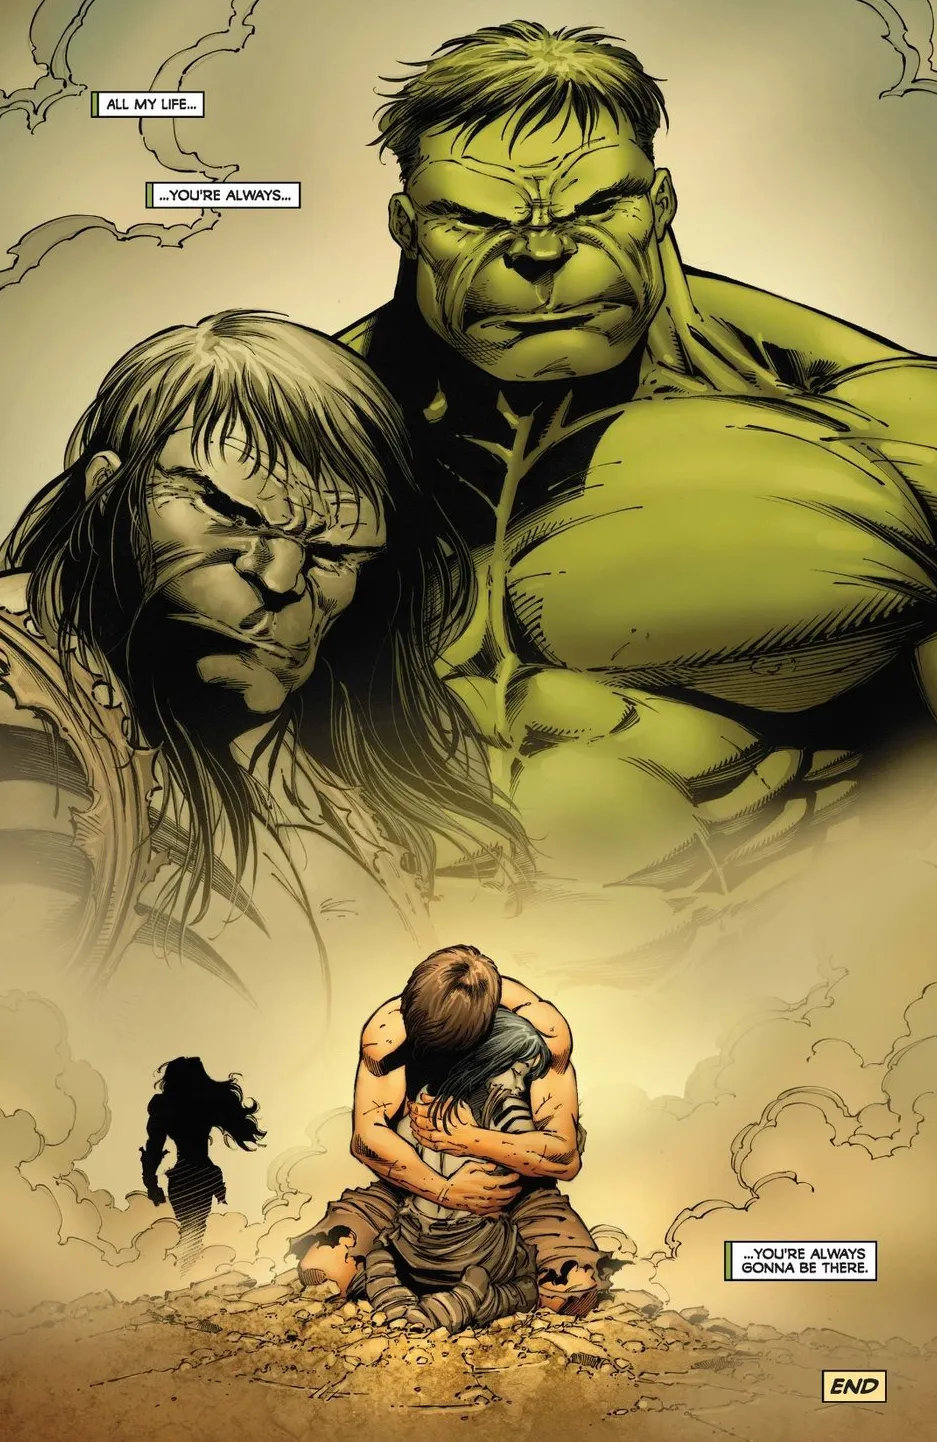 Quem é Skaar, o filho do Hulk?